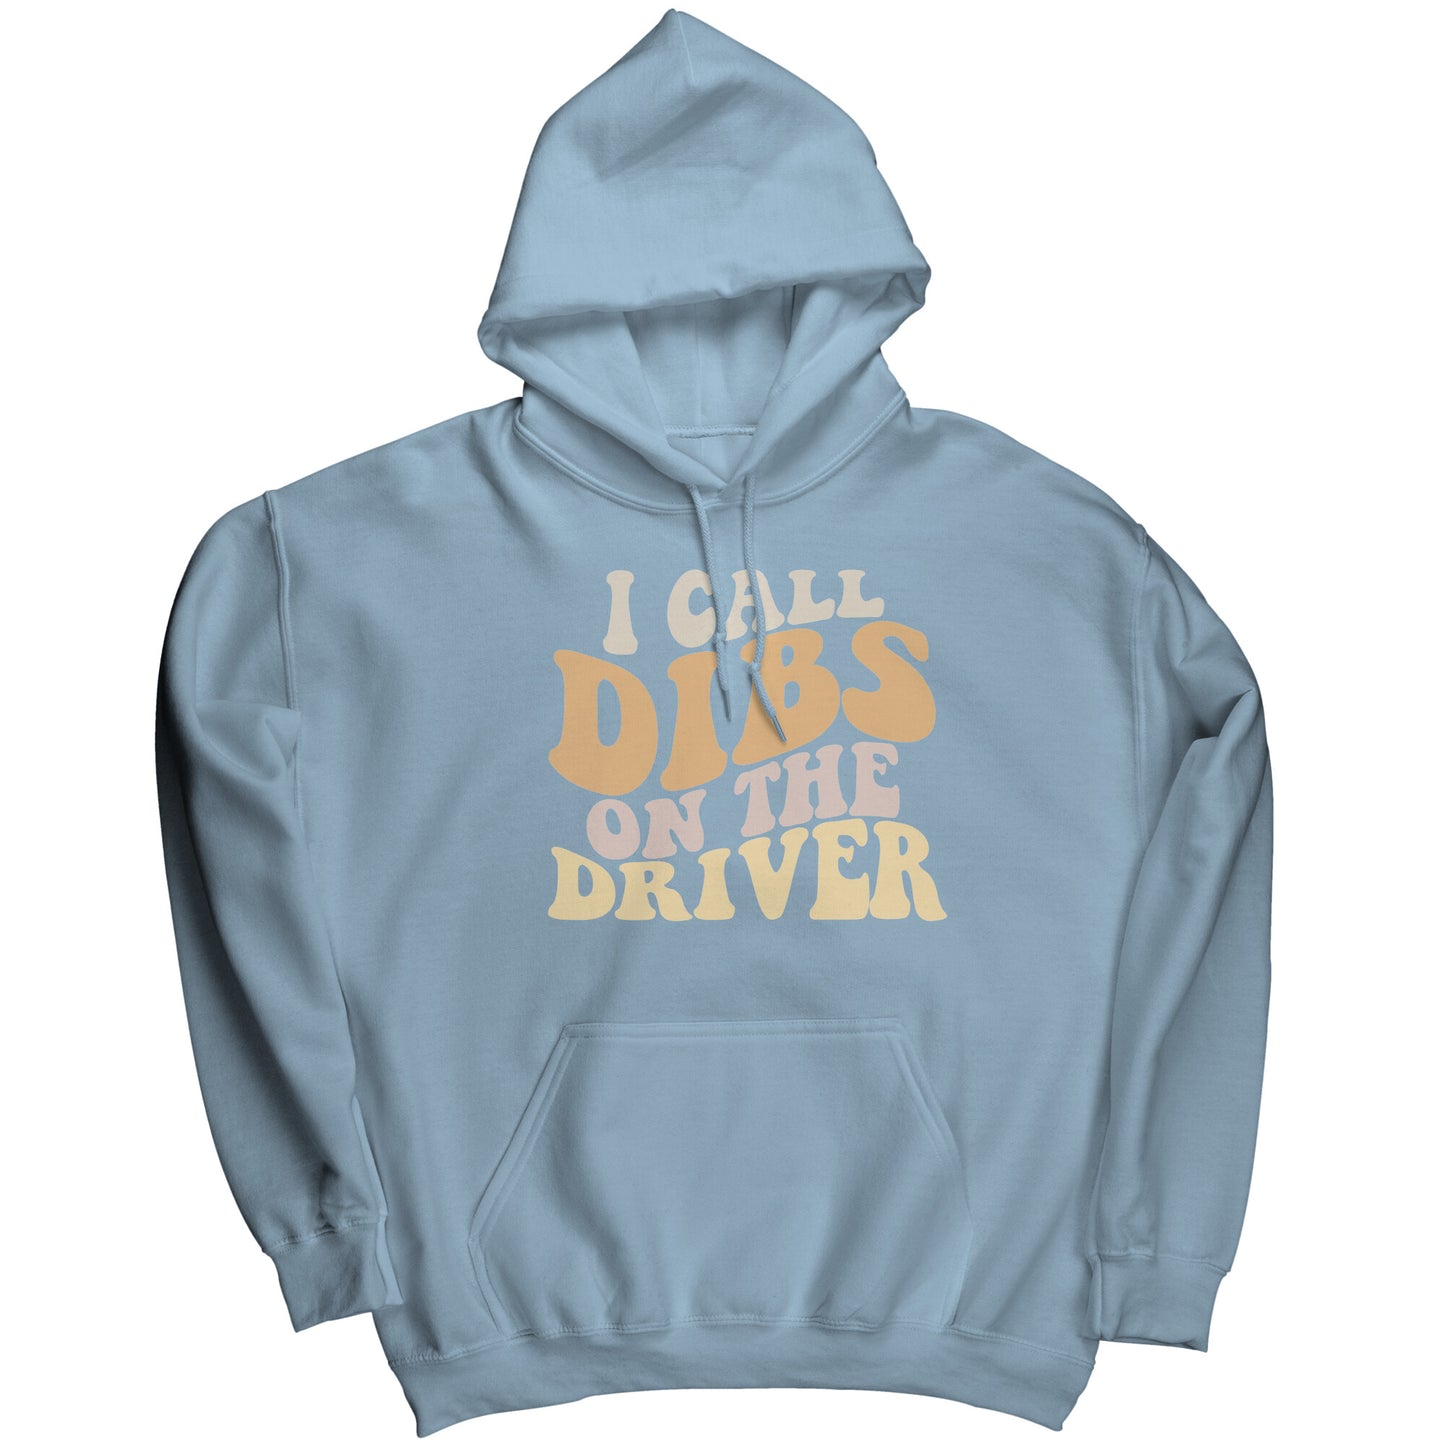 Dibs On The Driver Hoodie Sweatshirt